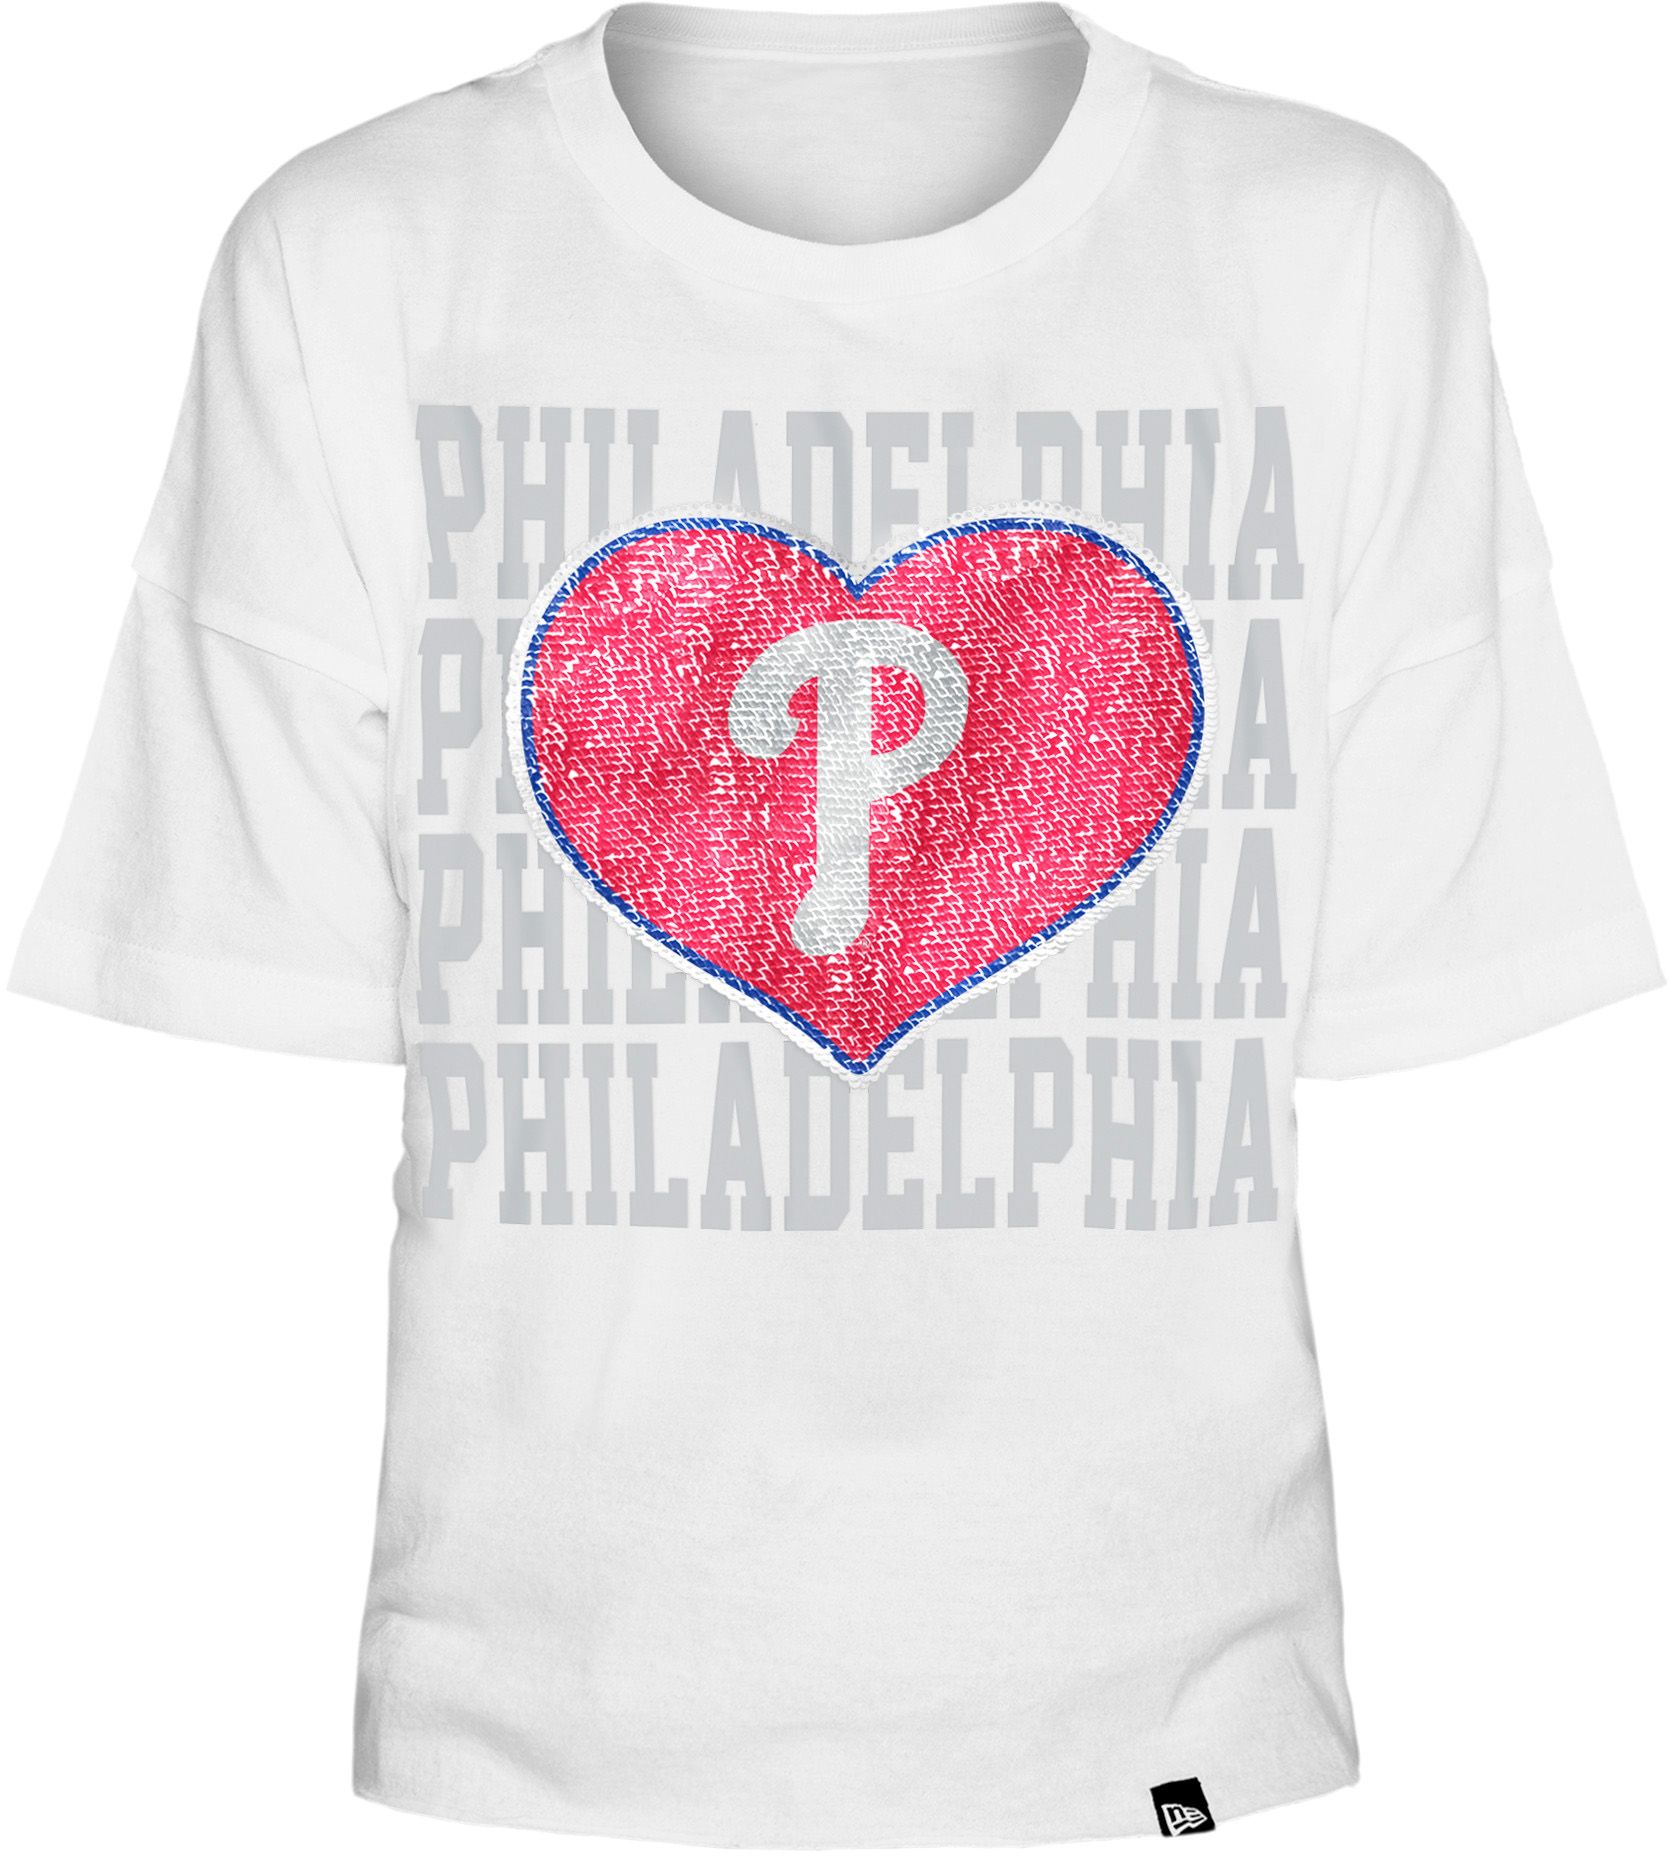 New Era / Youth Girls' Philadelphia Phillies White Heart T-Shirt